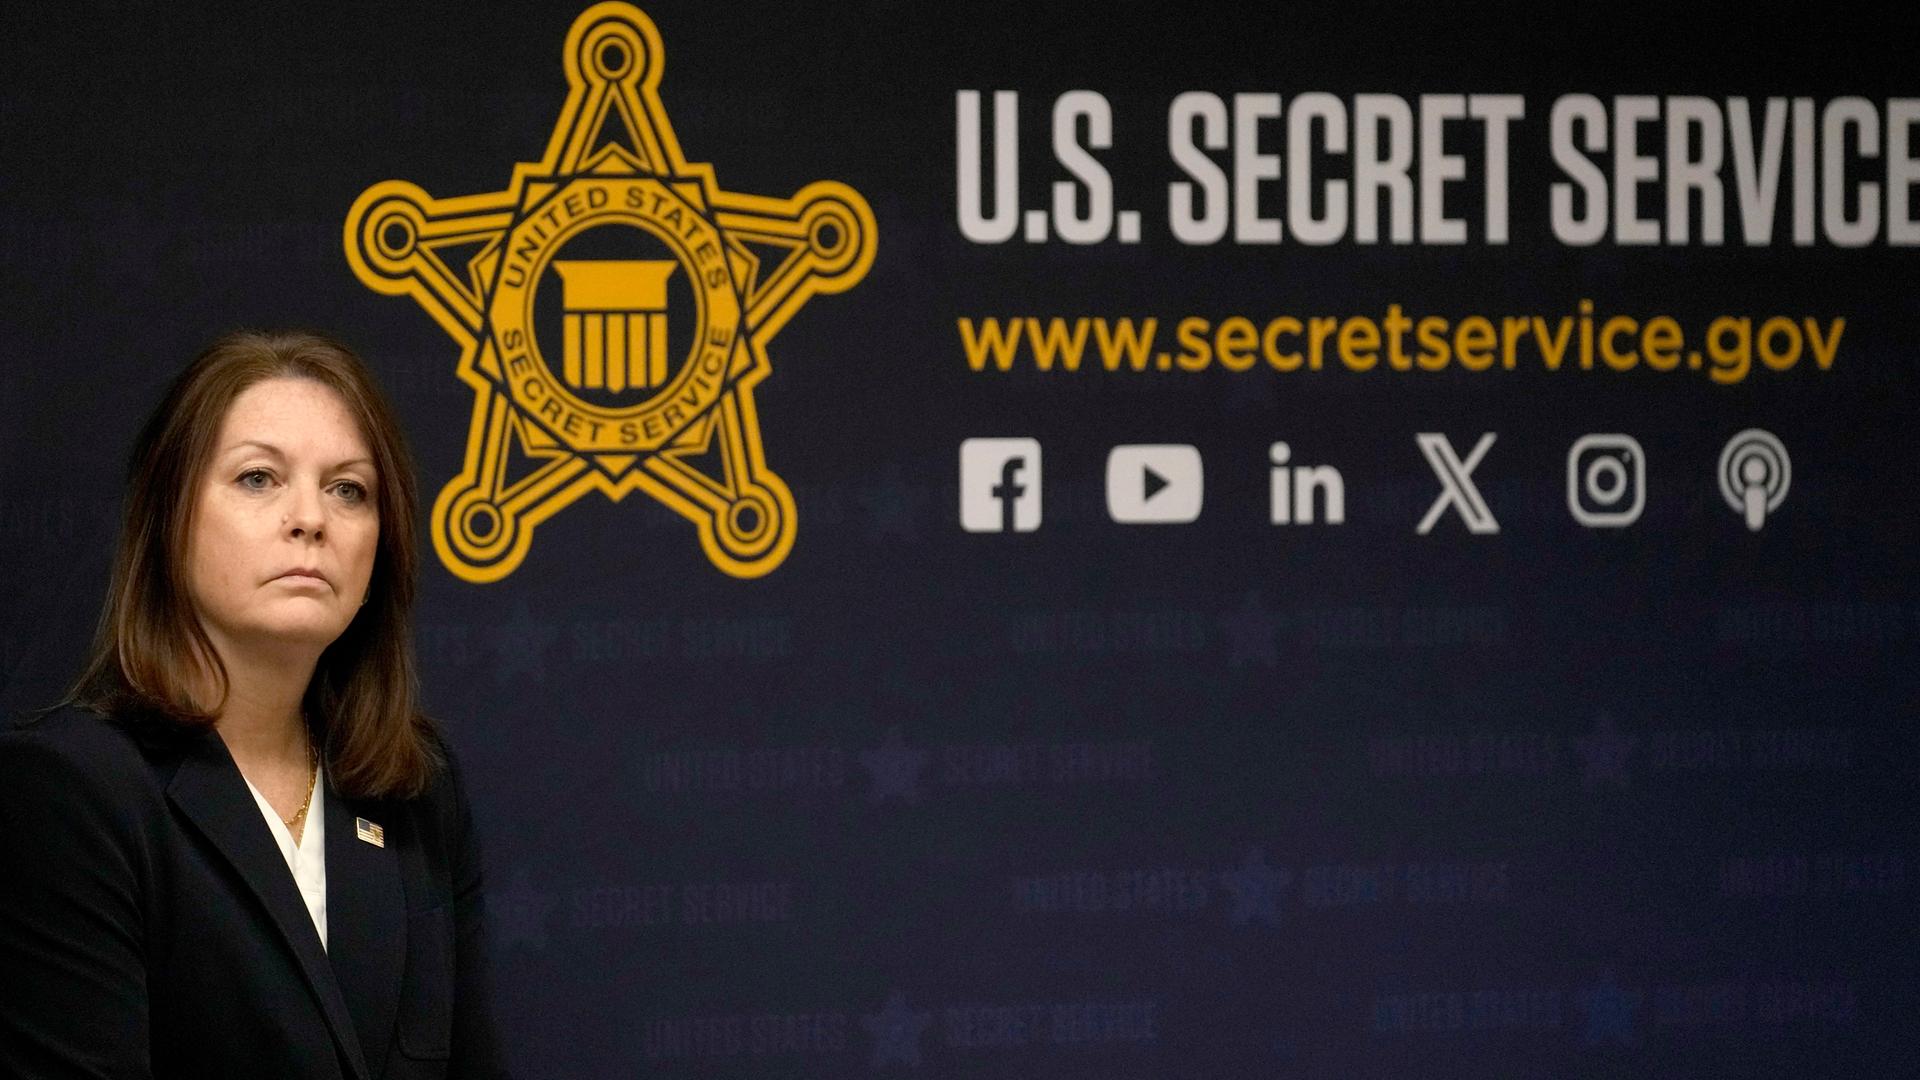 Chicago: Kimberly Cheatle, die Direktorin des US-amerikanischen Secret Service, nimmt an einer Pressekonferenz teil. Im Hintergrund das Logo des Secret Service und diverse Internet-Adressen.